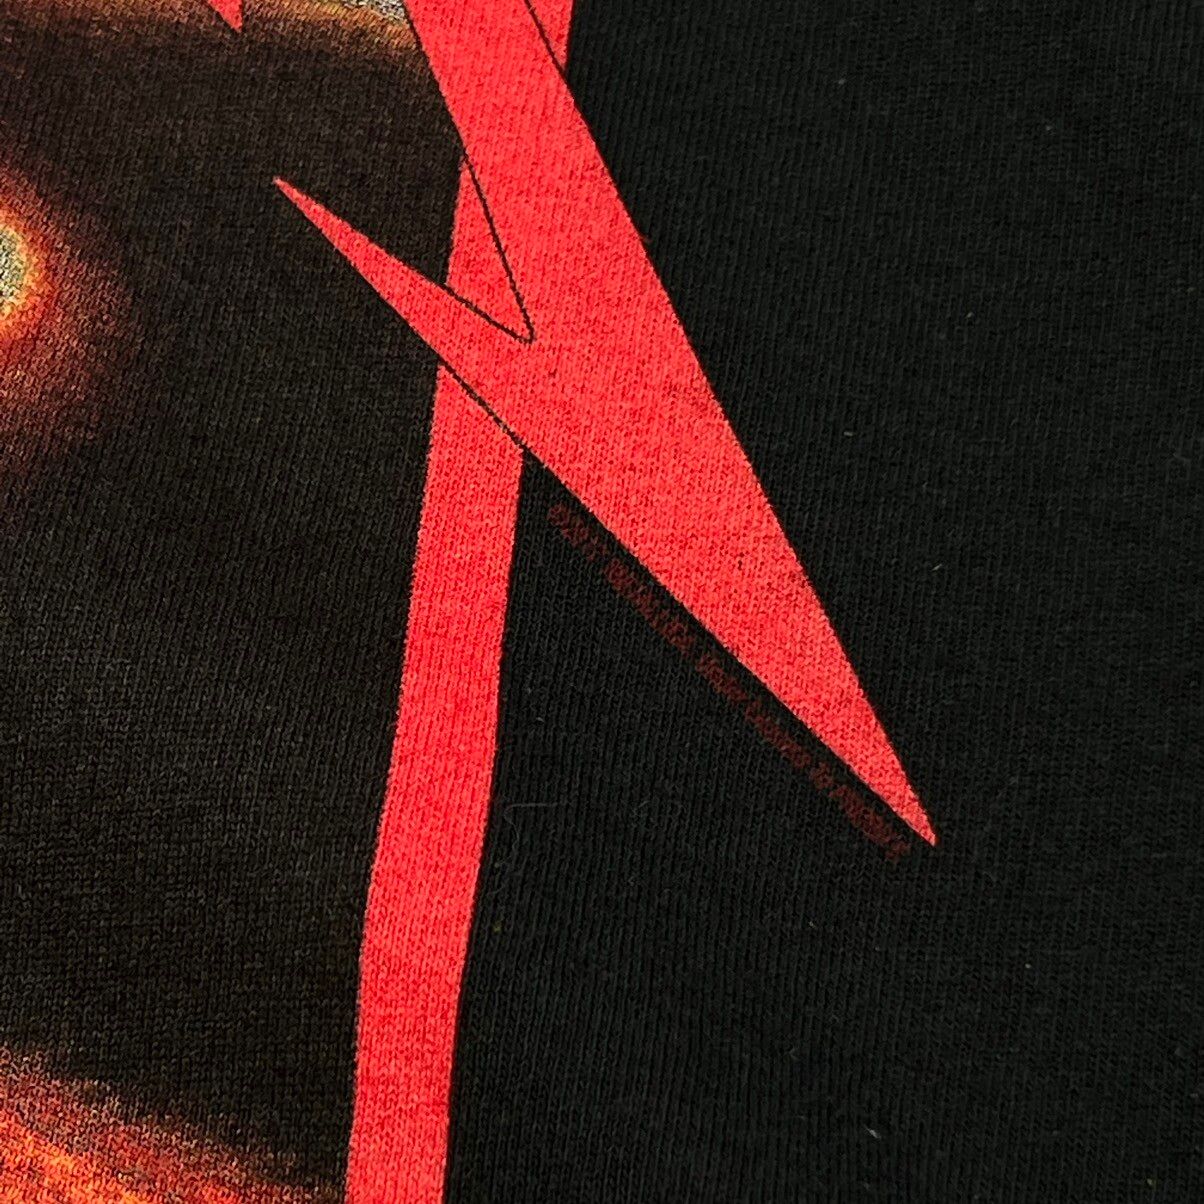 Vintage Vintage Metallica Kill 'em All Reprint Tee Shirt Size US XXL / EU 58 / 5 - 3 Thumbnail